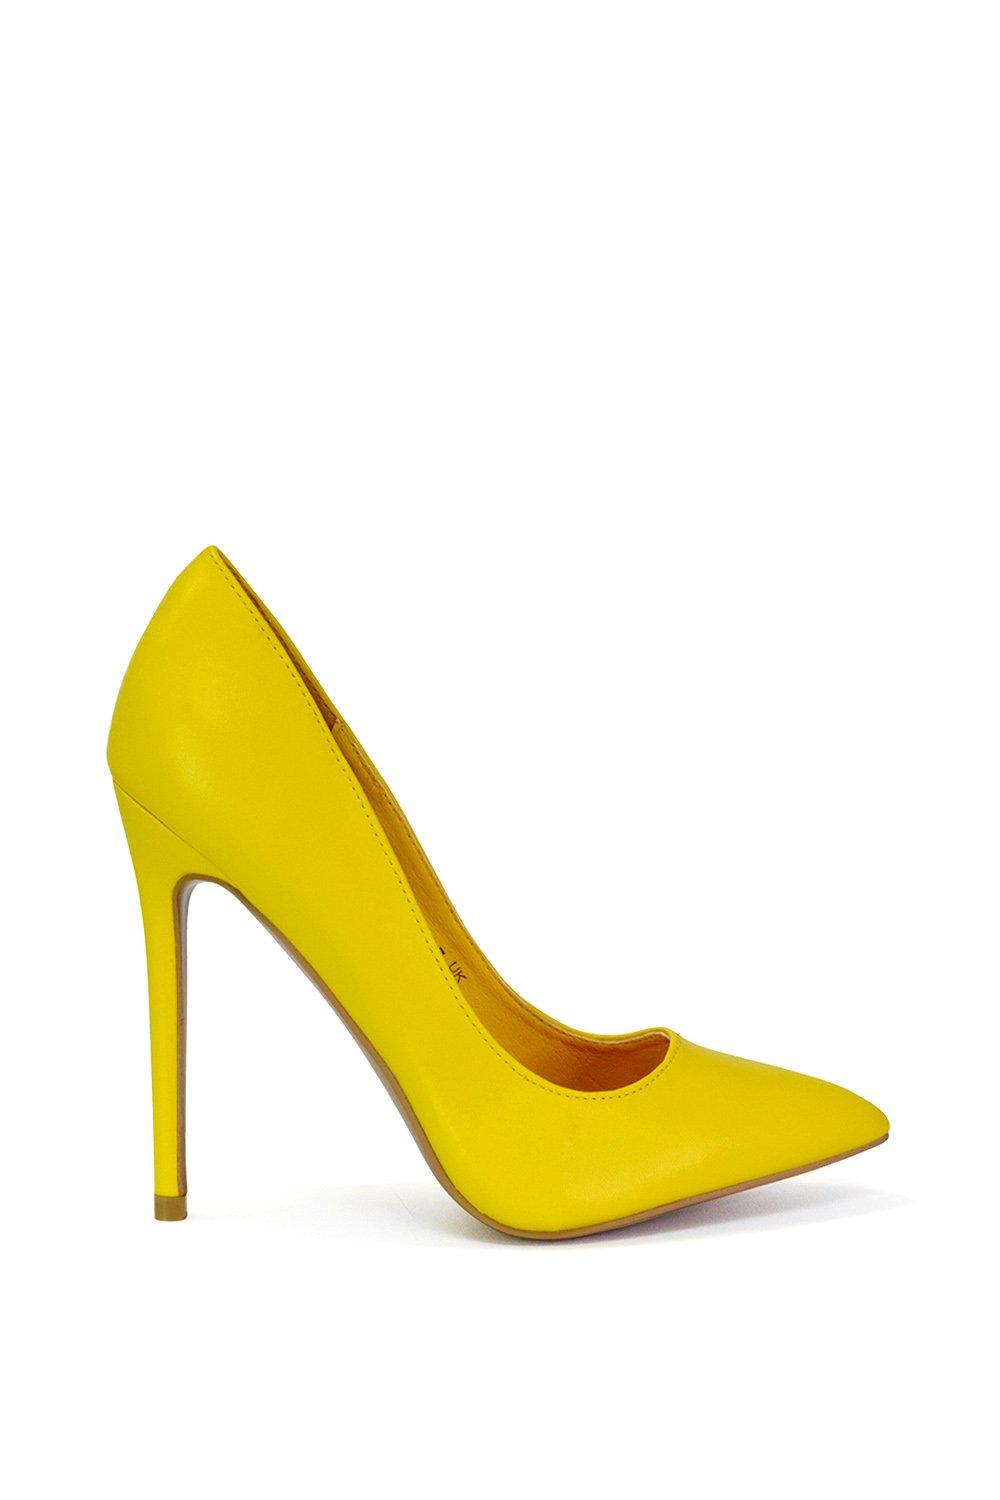 Эффектные туфли-лодочки на высоком каблуке-шпильке с острым носком 'Lu Lu' XY London, желтый туфли лодочки на высоком каблуке с заостренным носком cali на низкой шпильке xy london желтый